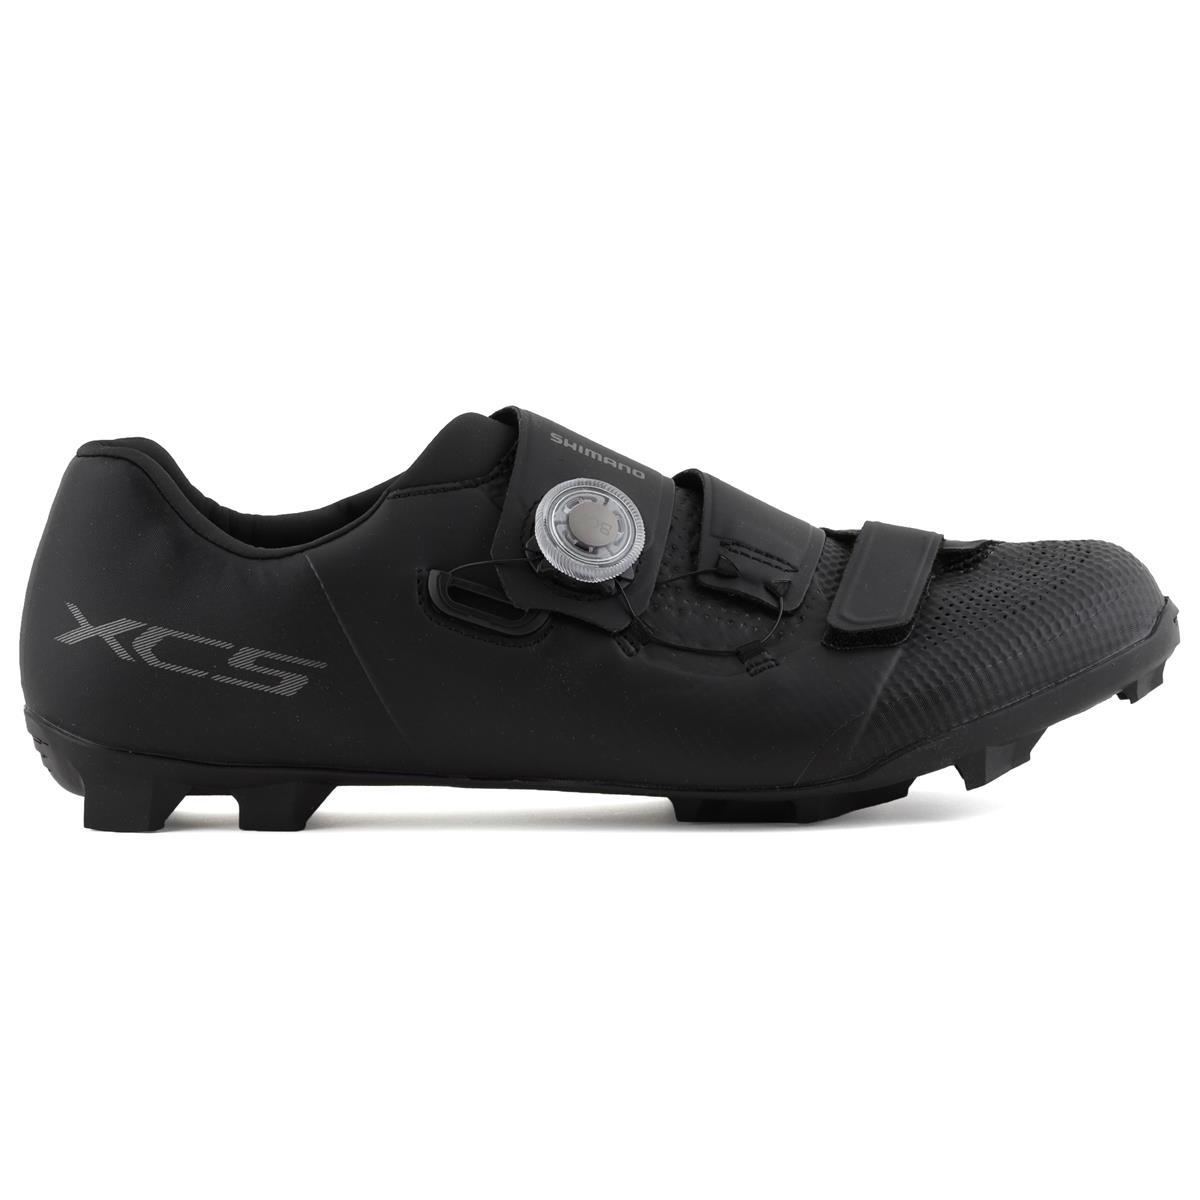 Shimano XC5 Mountain Bike Shoes Black Standard Width 45